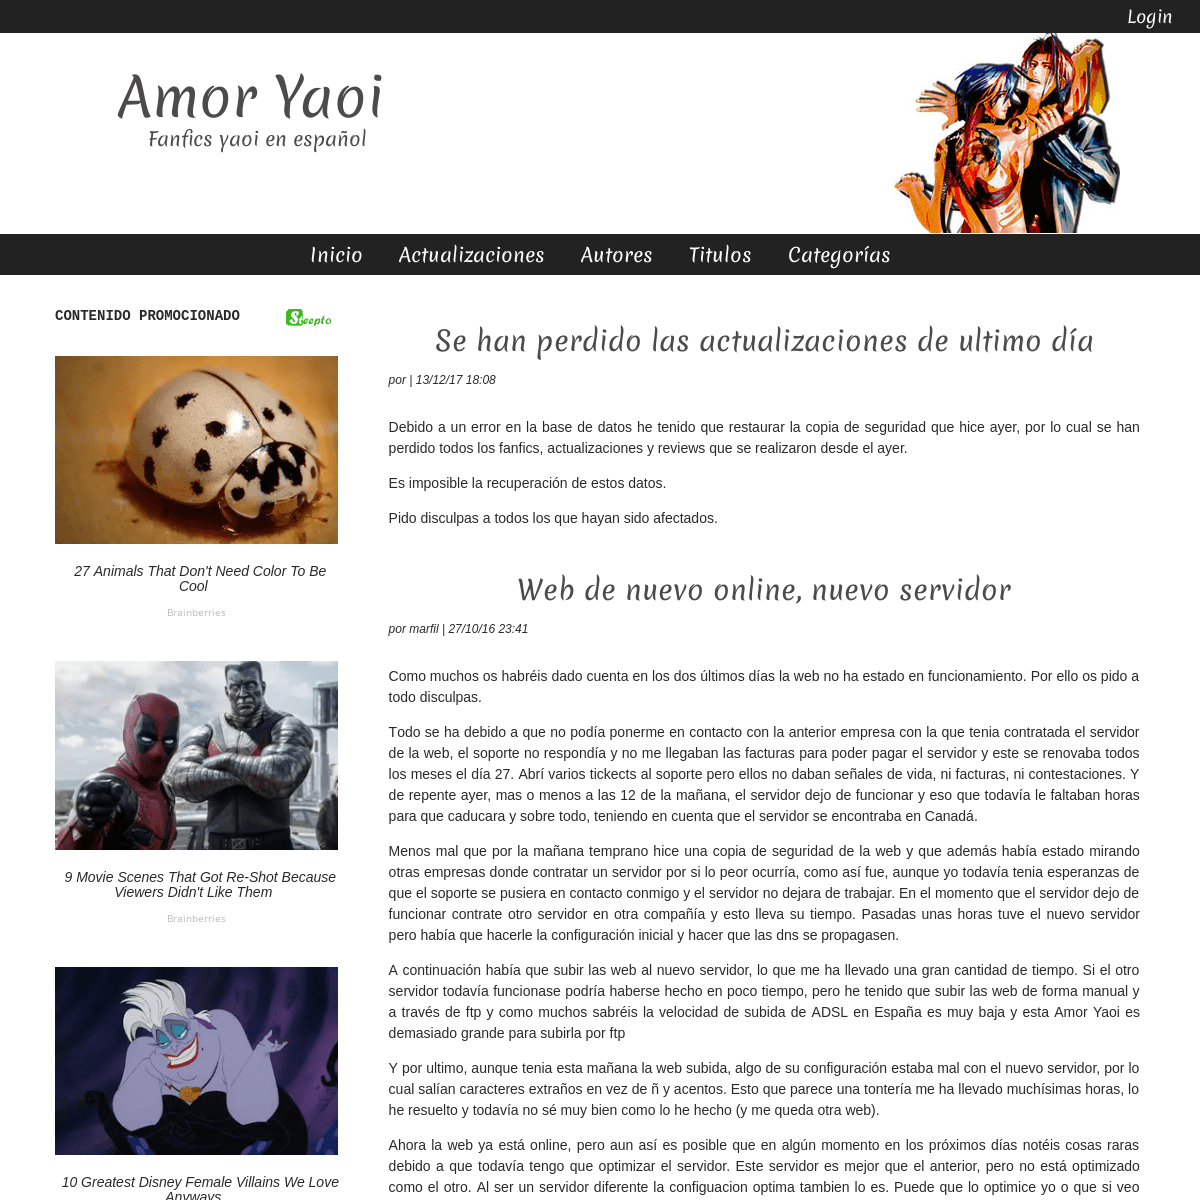 A complete backup of amor-yaoi.com